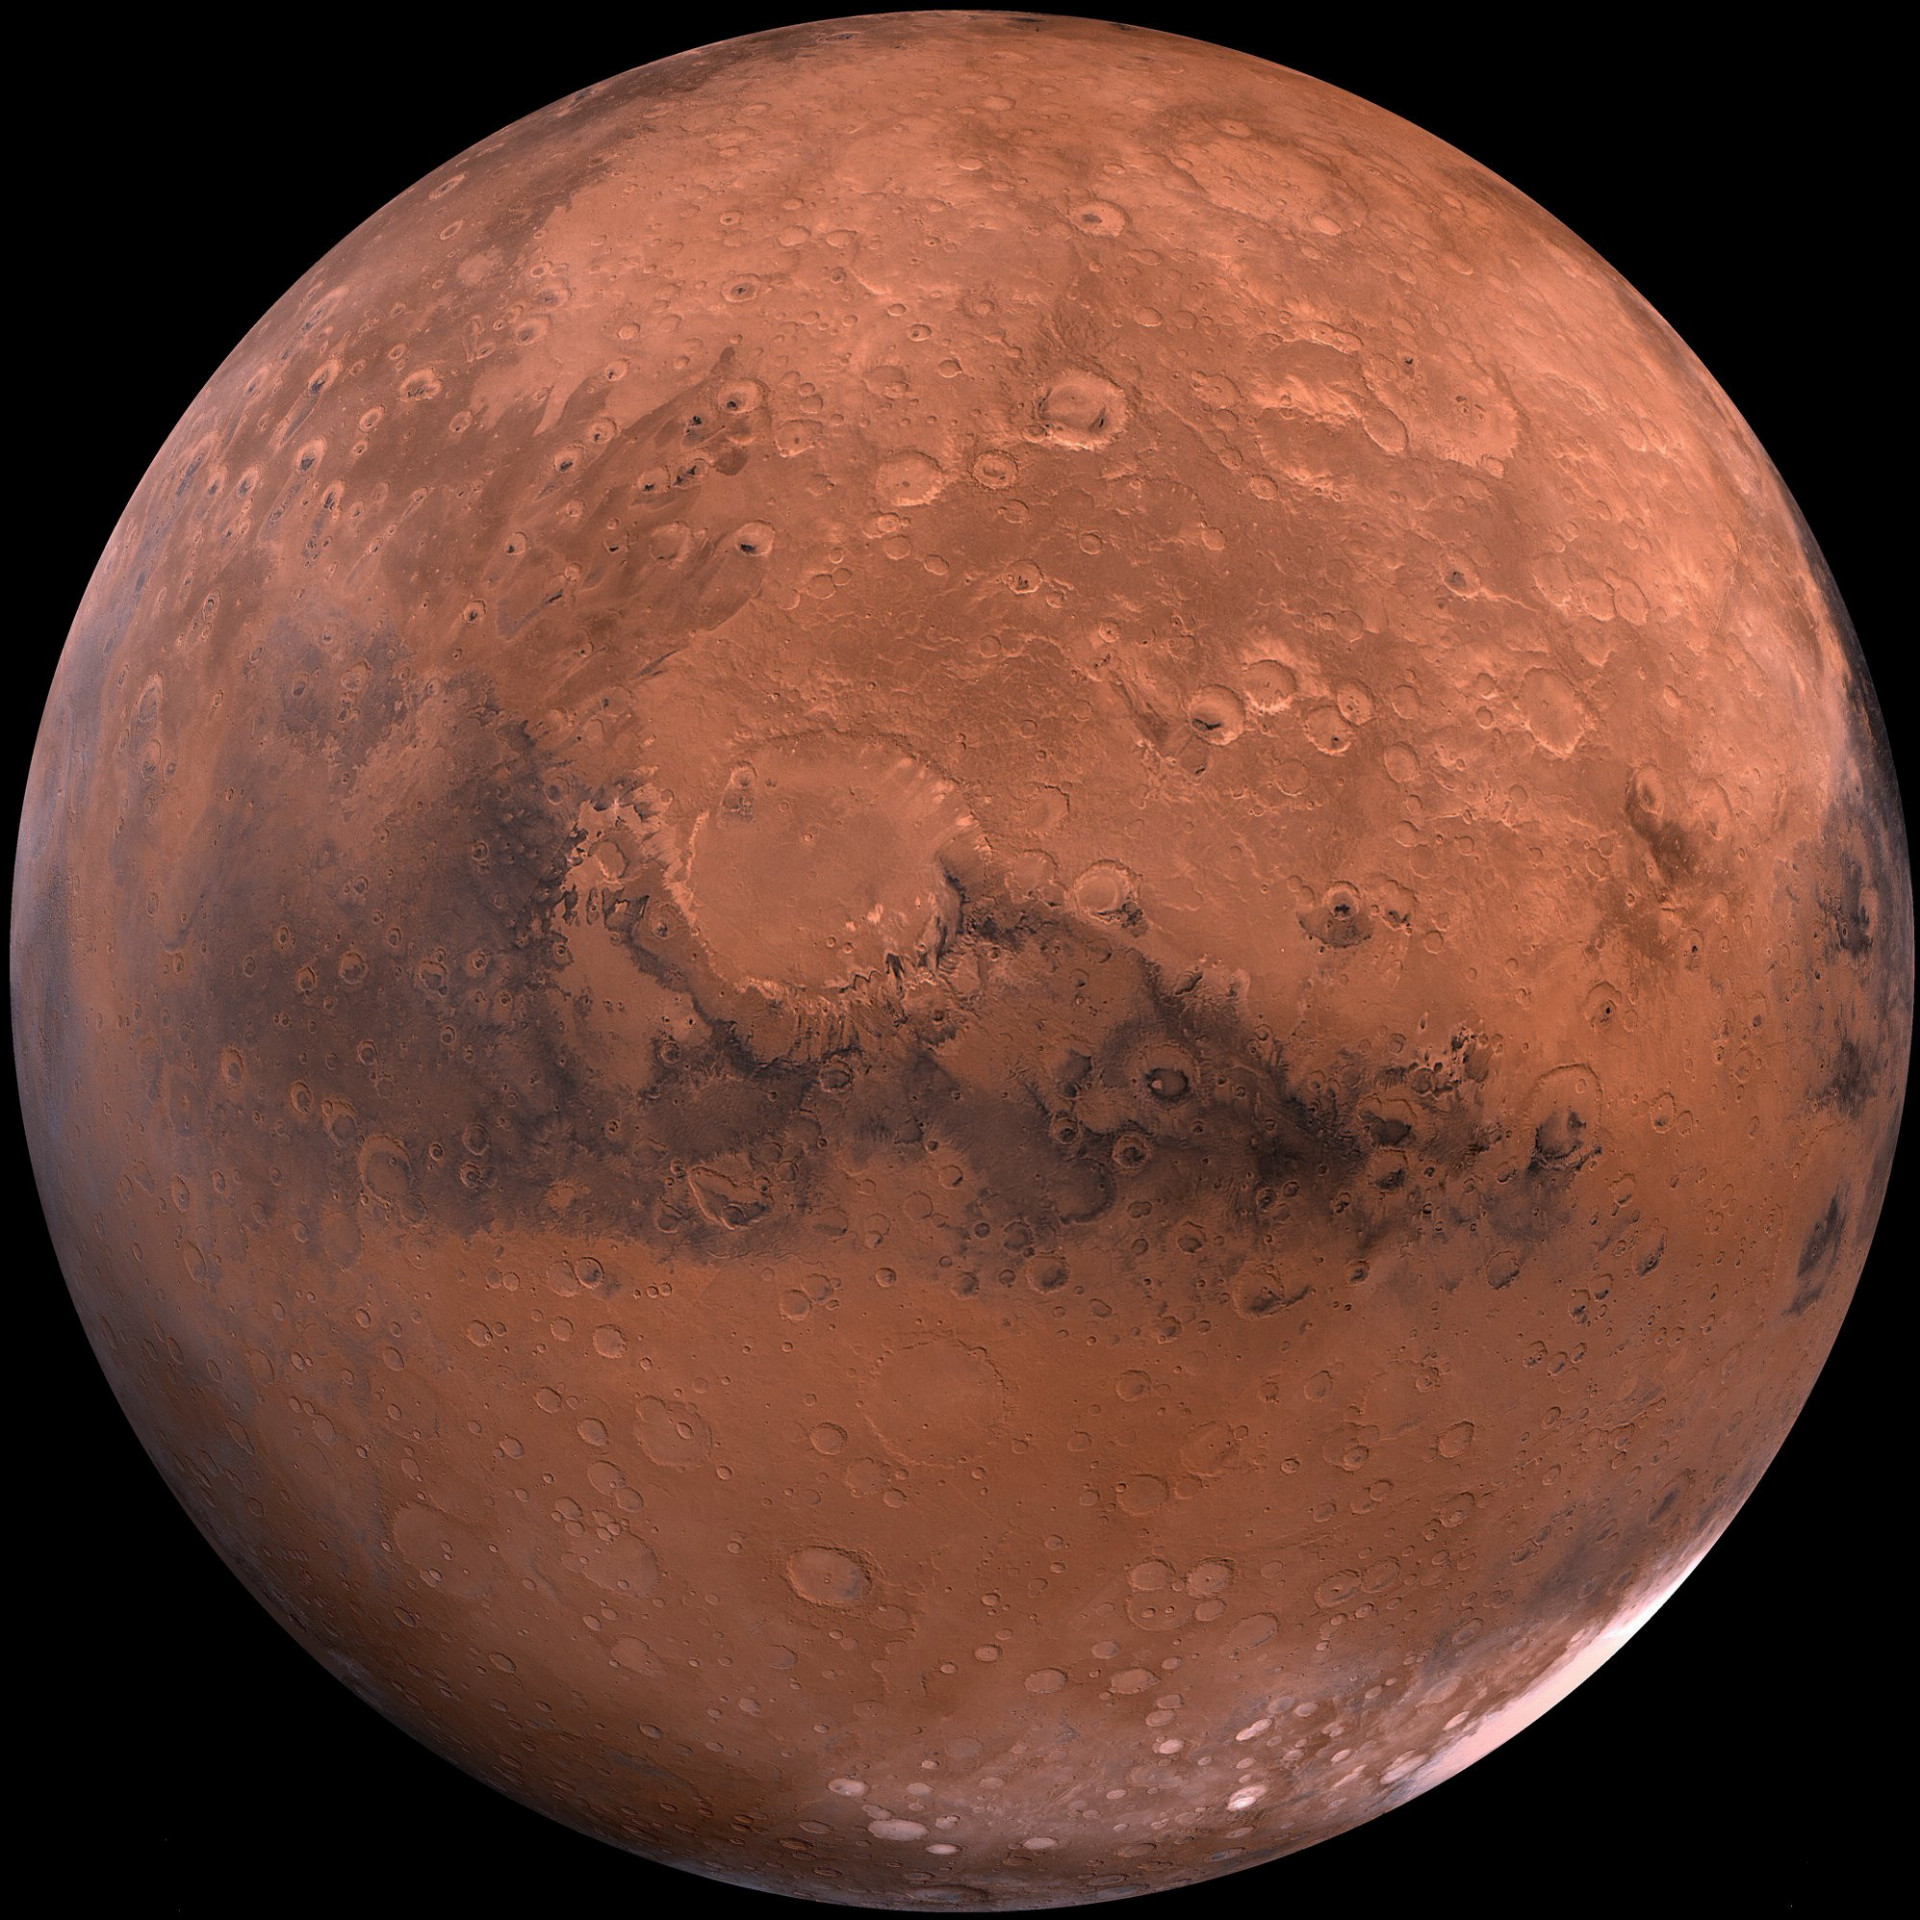 Podľa výskumu zverejneného v júli vedci povedali, že objavili jazero pod zamrznutým povrchom južného pólu Marsu. Jazero je považované za suché a mimoriadne studené, ale objav je ďalším dôkazom toho, že na červenej planéte mohol raz existovať život - alebo tam môže existovať.